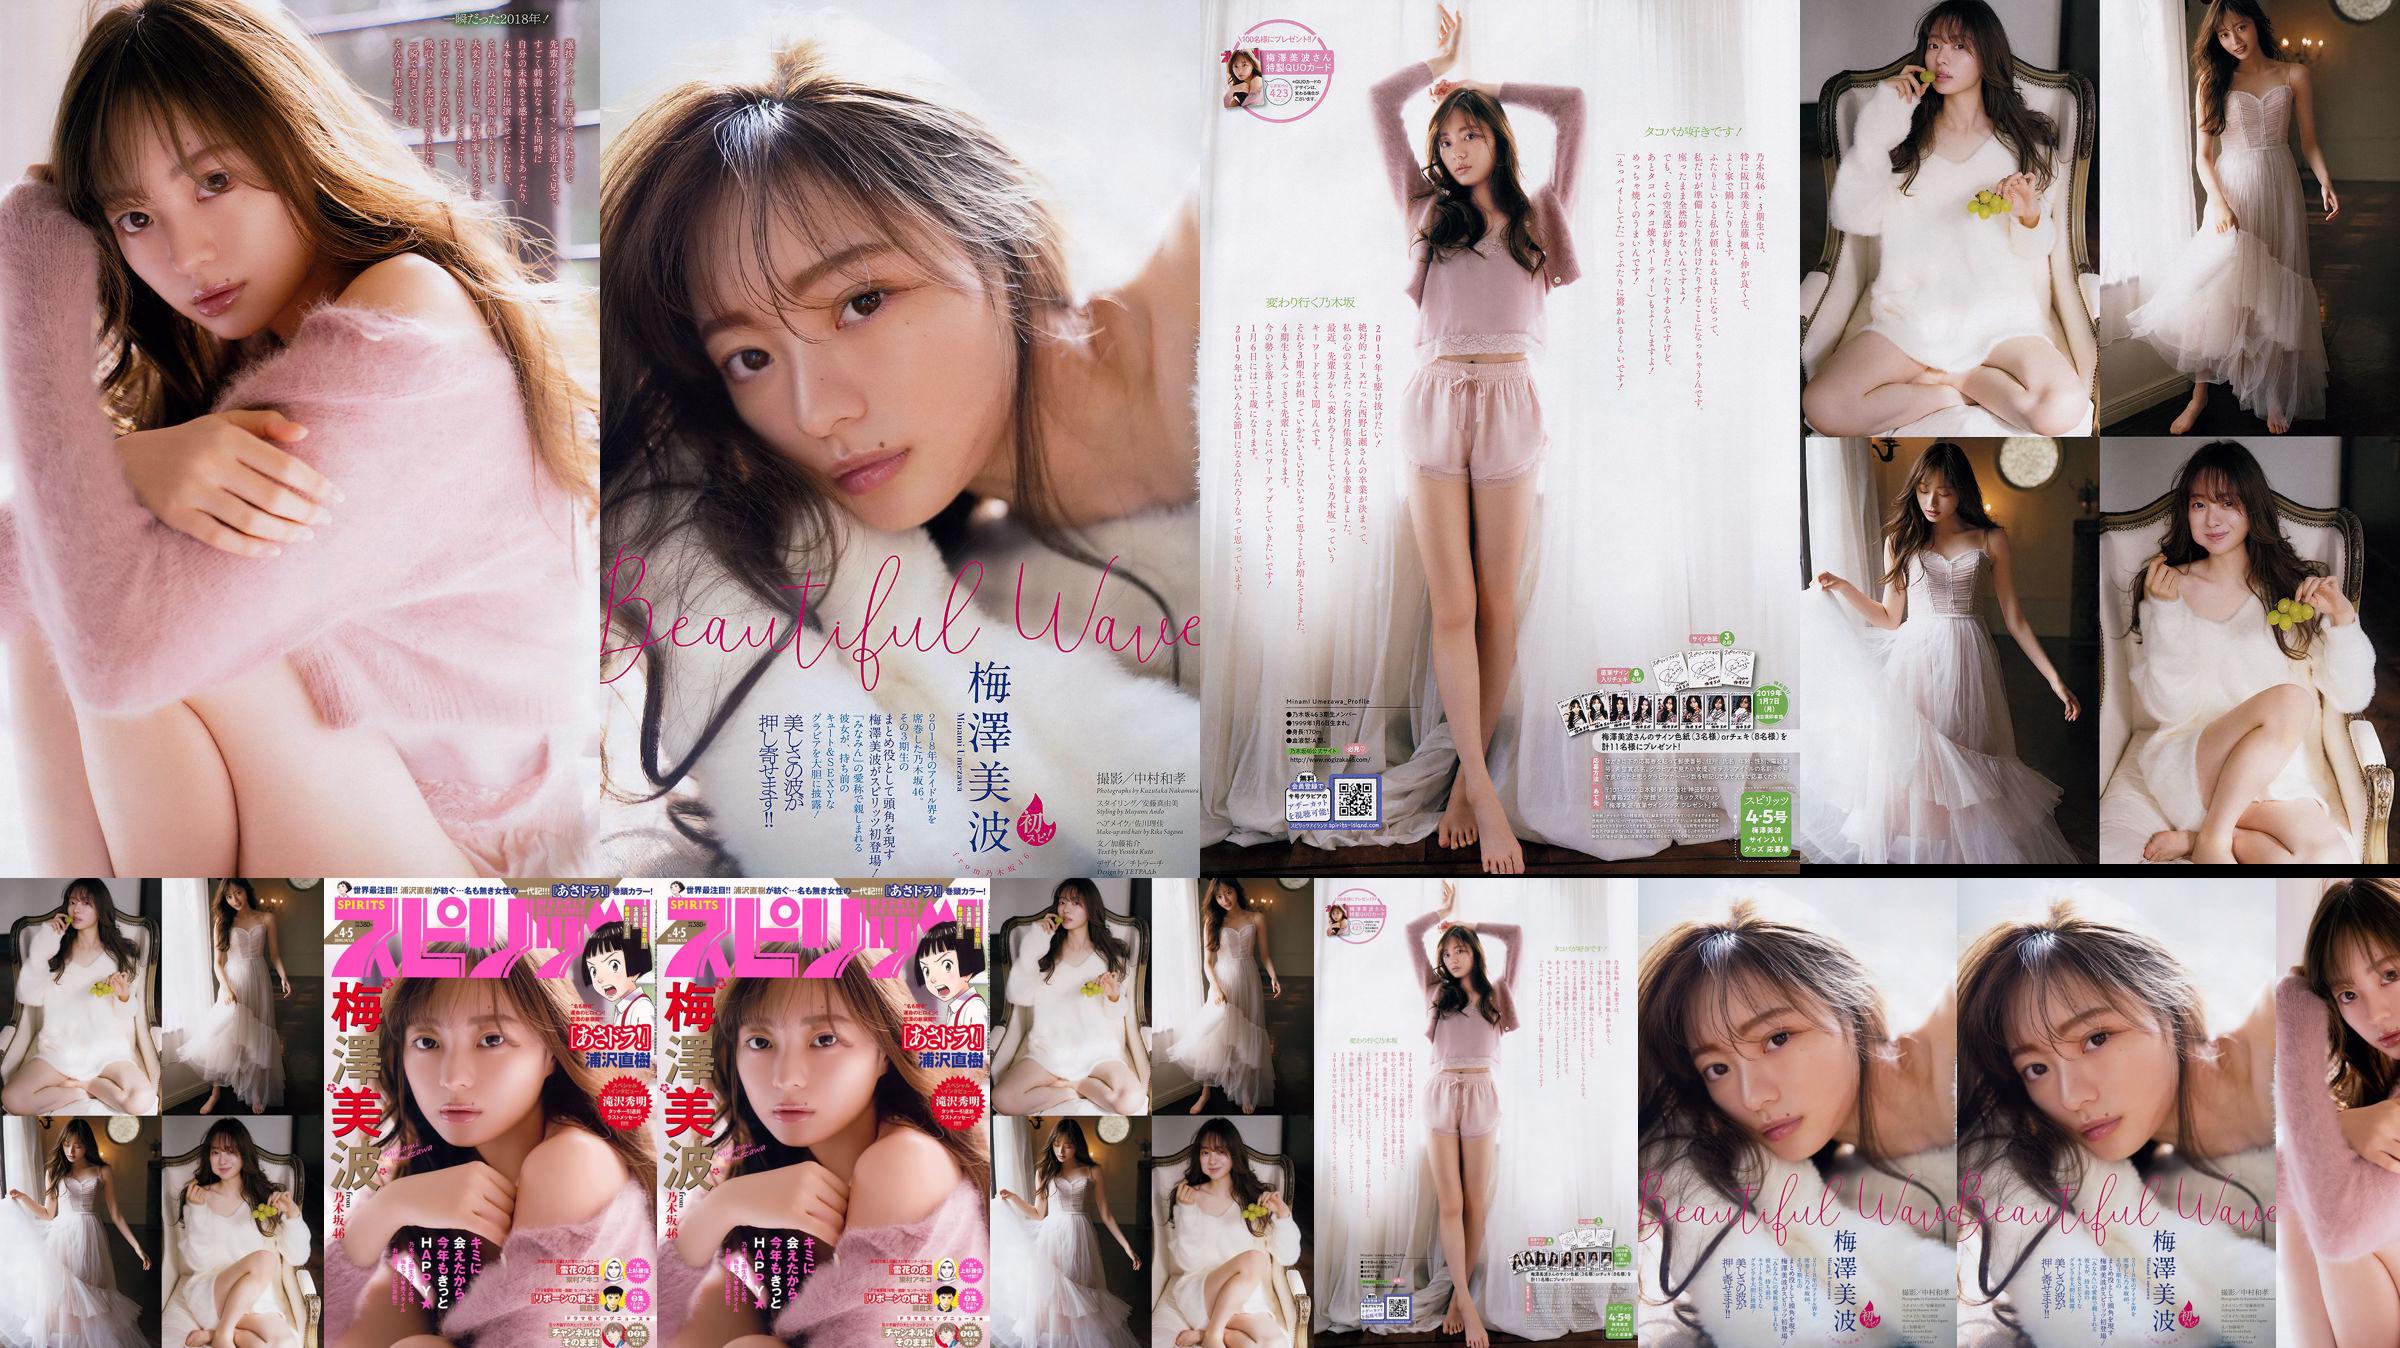 [Grands esprits de la bande dessinée hebdomadaire] Minami Umezawa 2019 N ° 04-05 Photo Magazine No.add988 Page 1